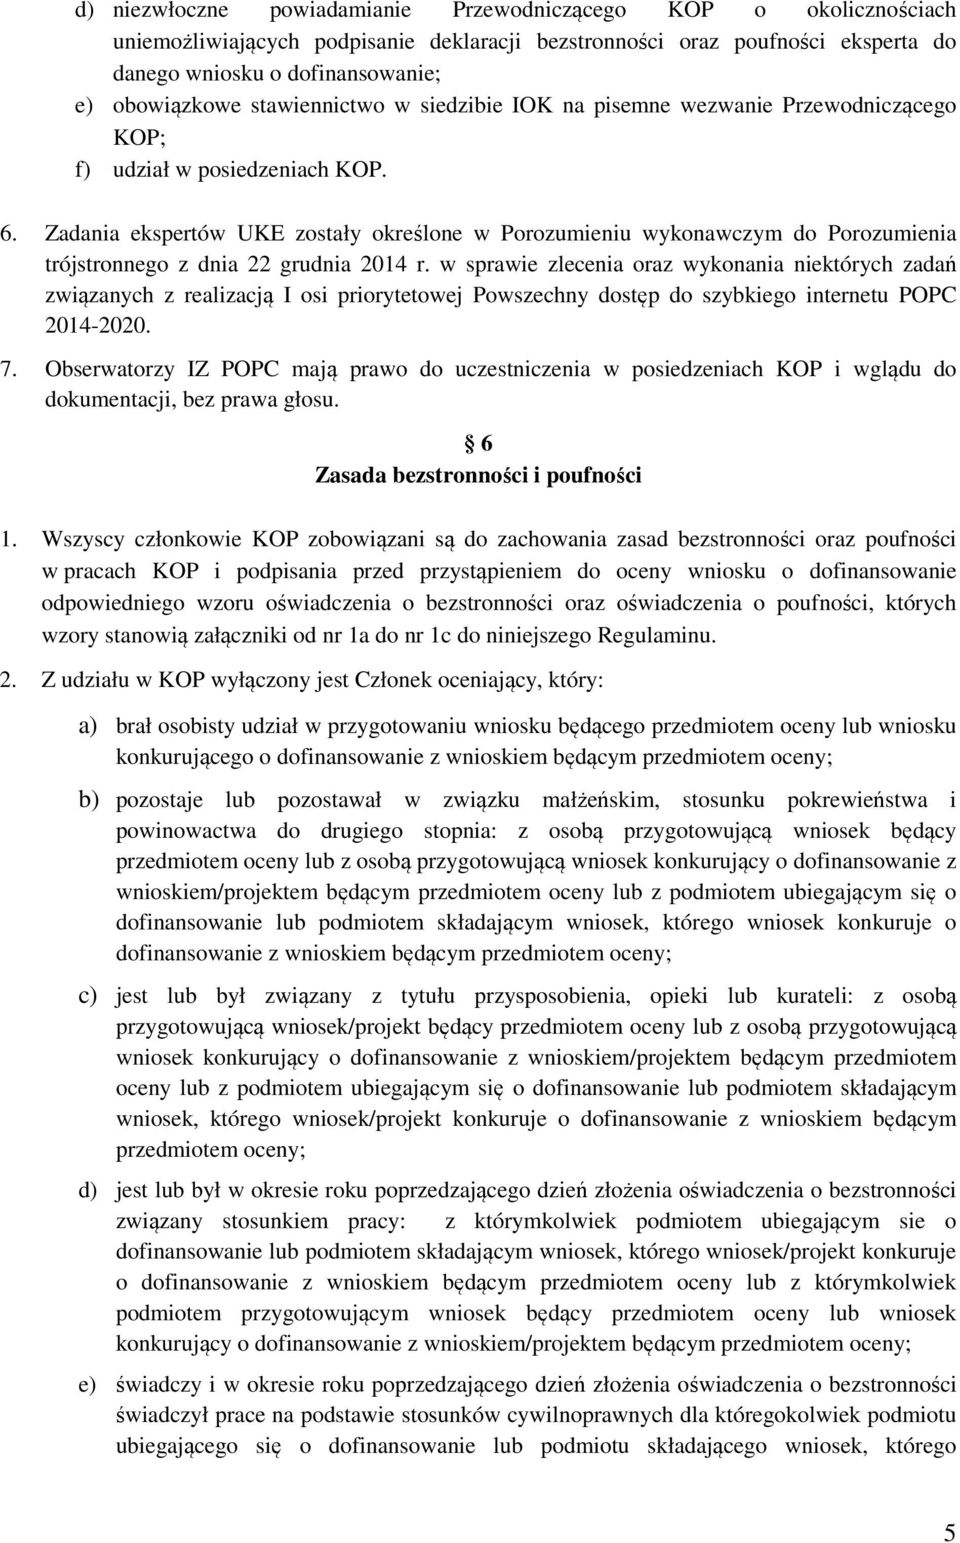 Zadania ekspertów UKE zostały określone w Porozumieniu wykonawczym do Porozumienia trójstronnego z dnia 22 grudnia 2014 r.